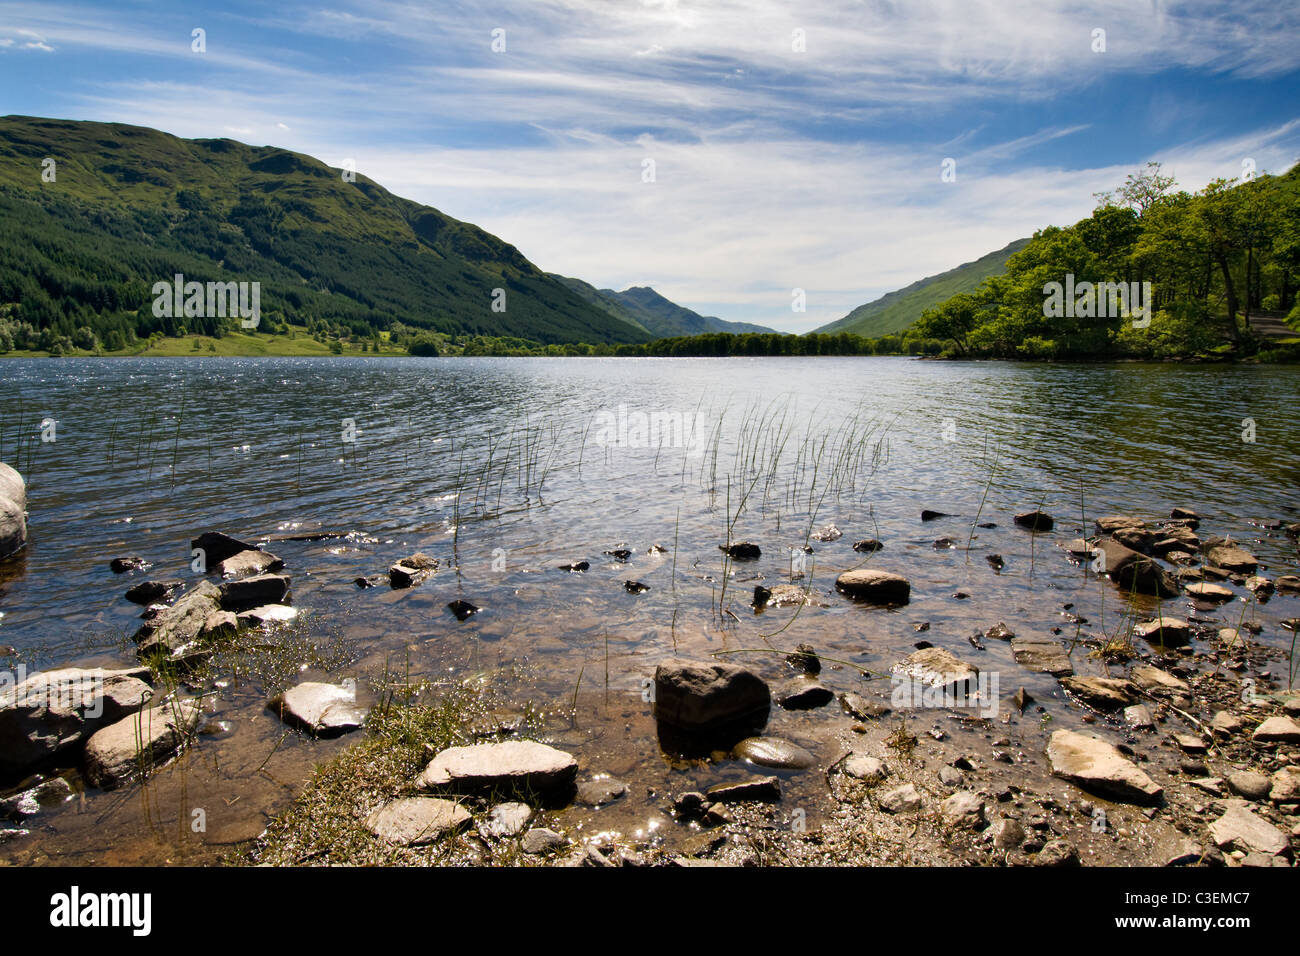 Loch Voil in Balquhidder glen, parte del Loch Lomond e il Trossachs national park central Scozia prese nelle belle giornate estive Foto Stock